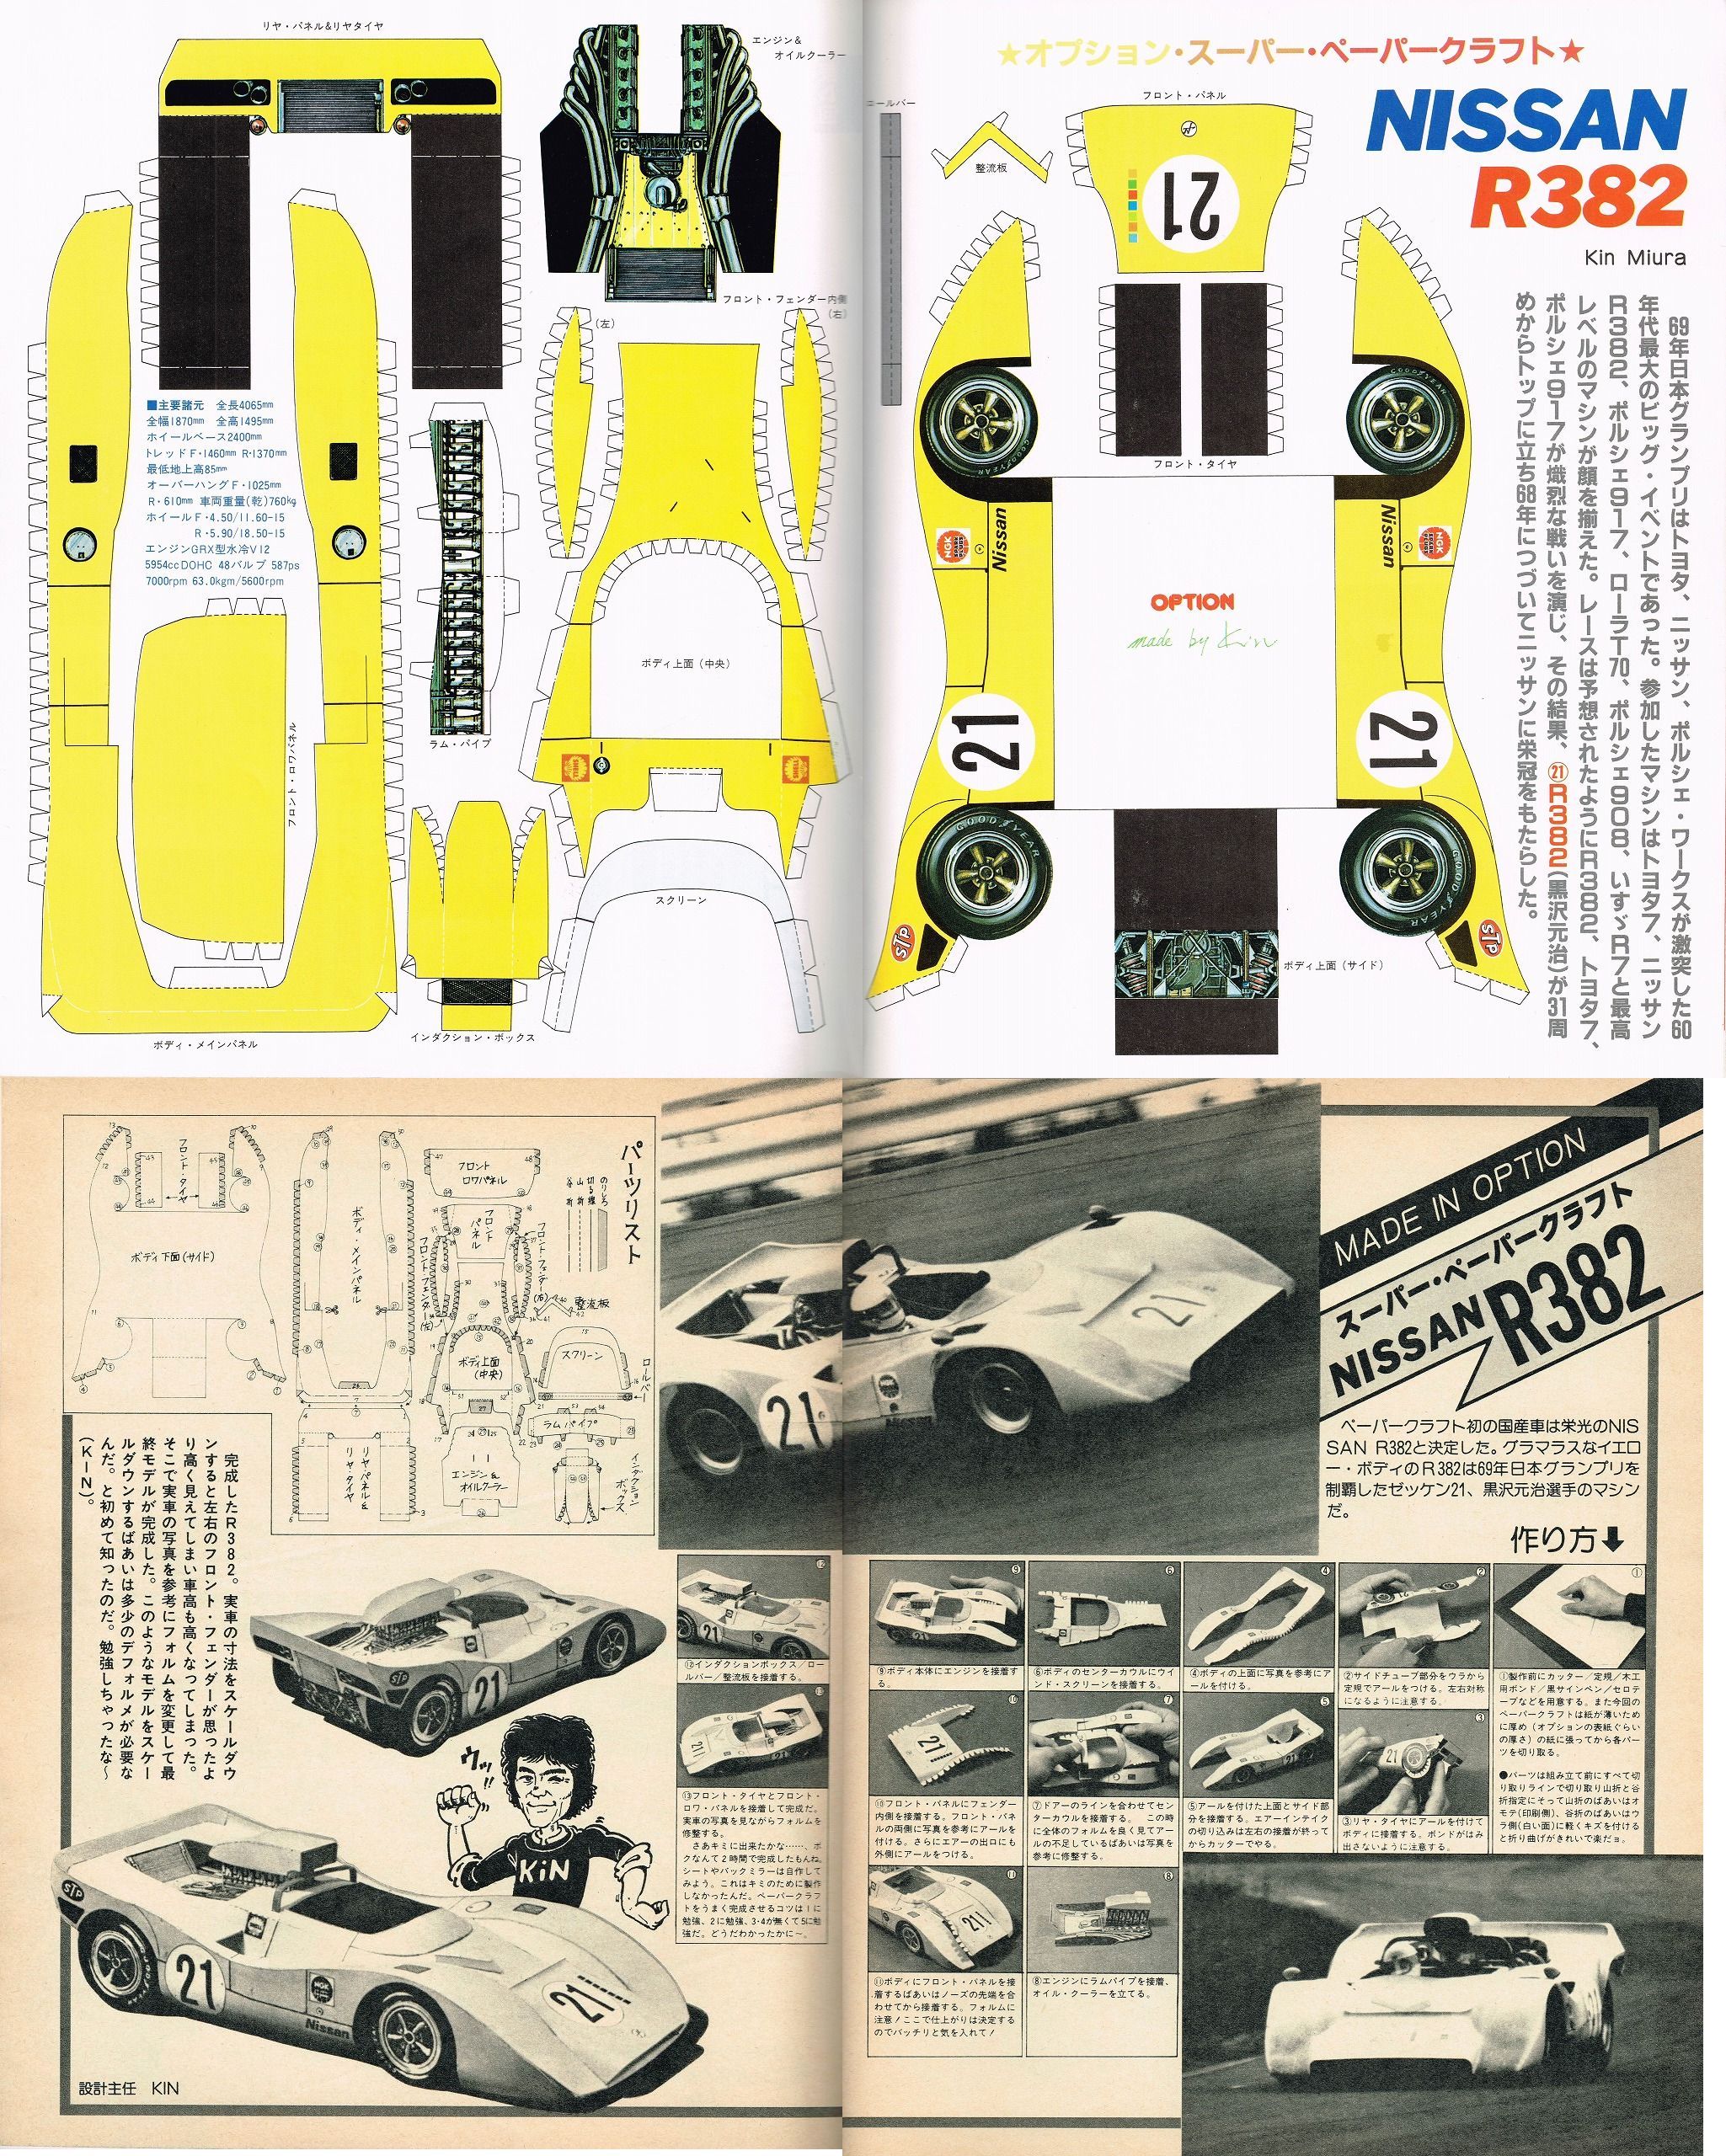 81 08 ﾋﾟｱｯﾂｧ連結1 画像 初期のoptionには 世界のペーパークラフト王 Kinの作品が付属していた Auto Sport Opt Option 1981年6月号 他 Clicccar Com